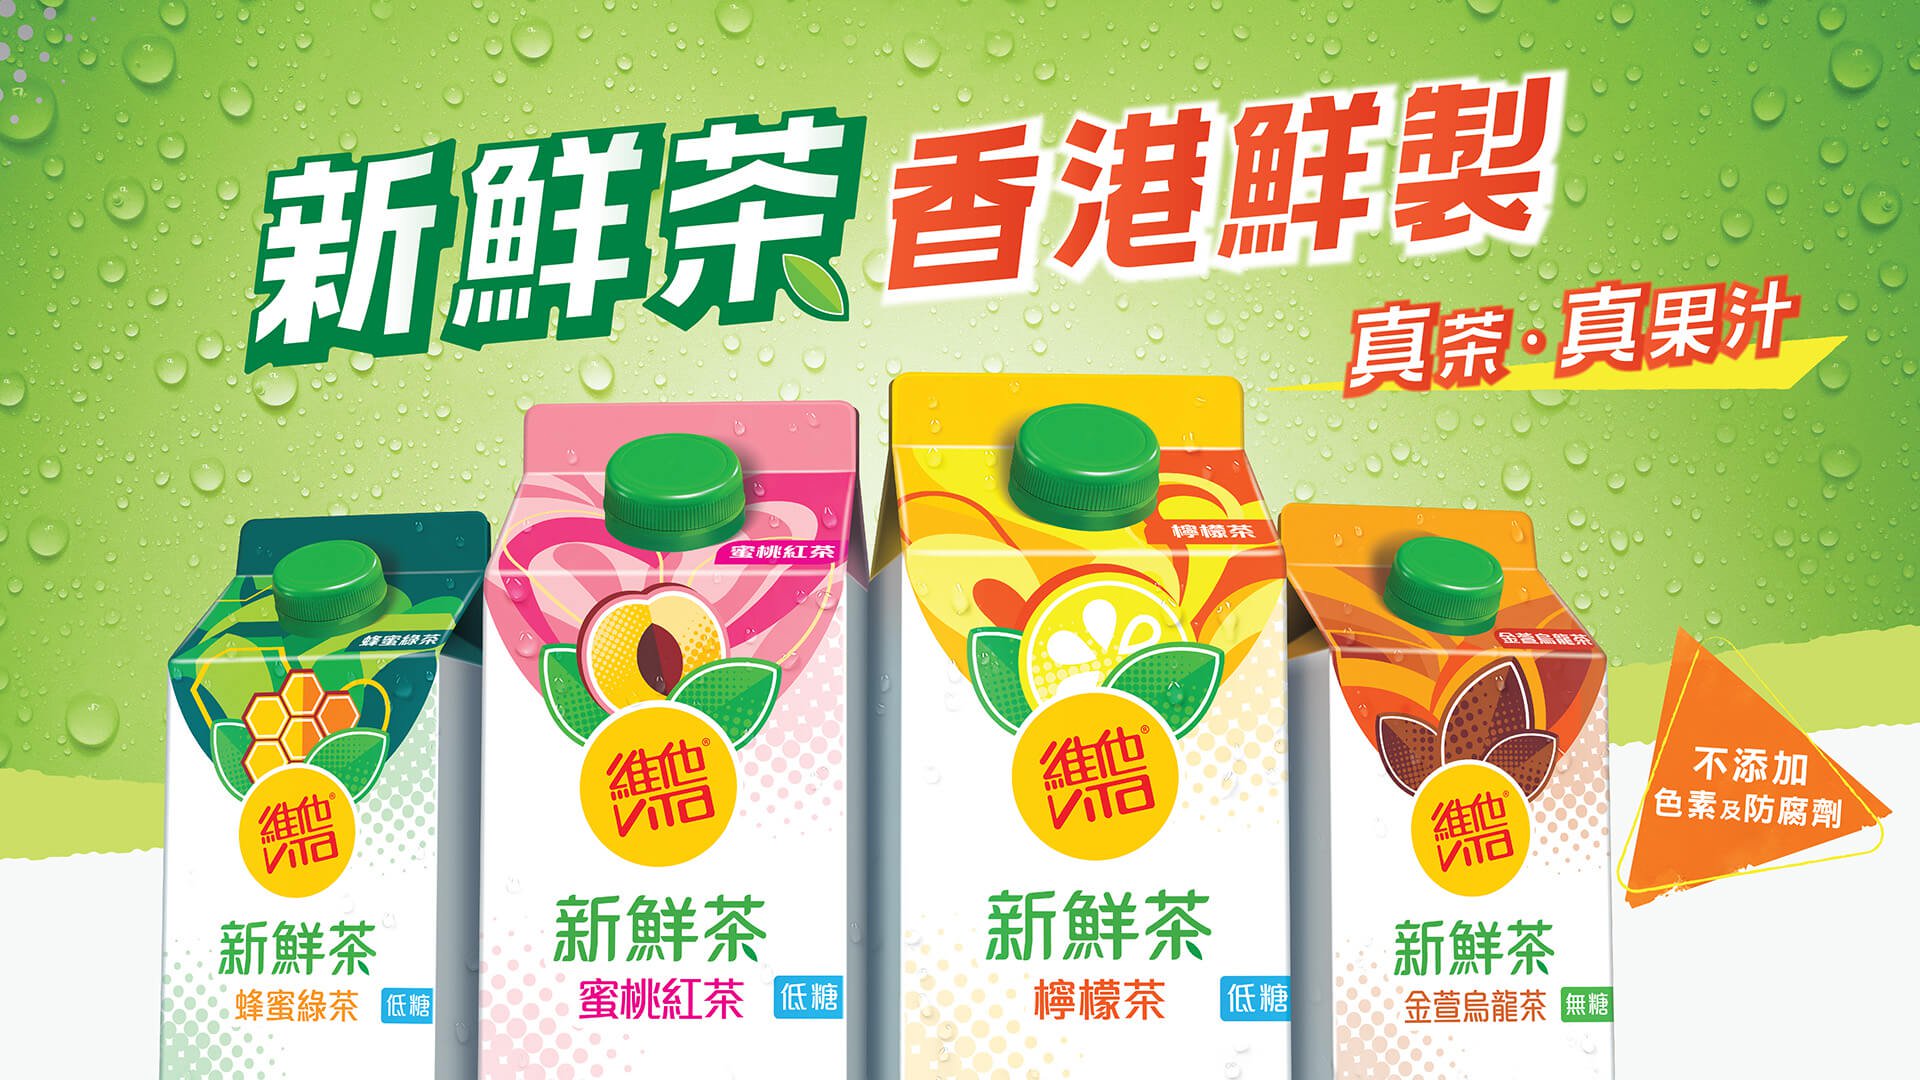 維他鮮茶品牌推廣活動